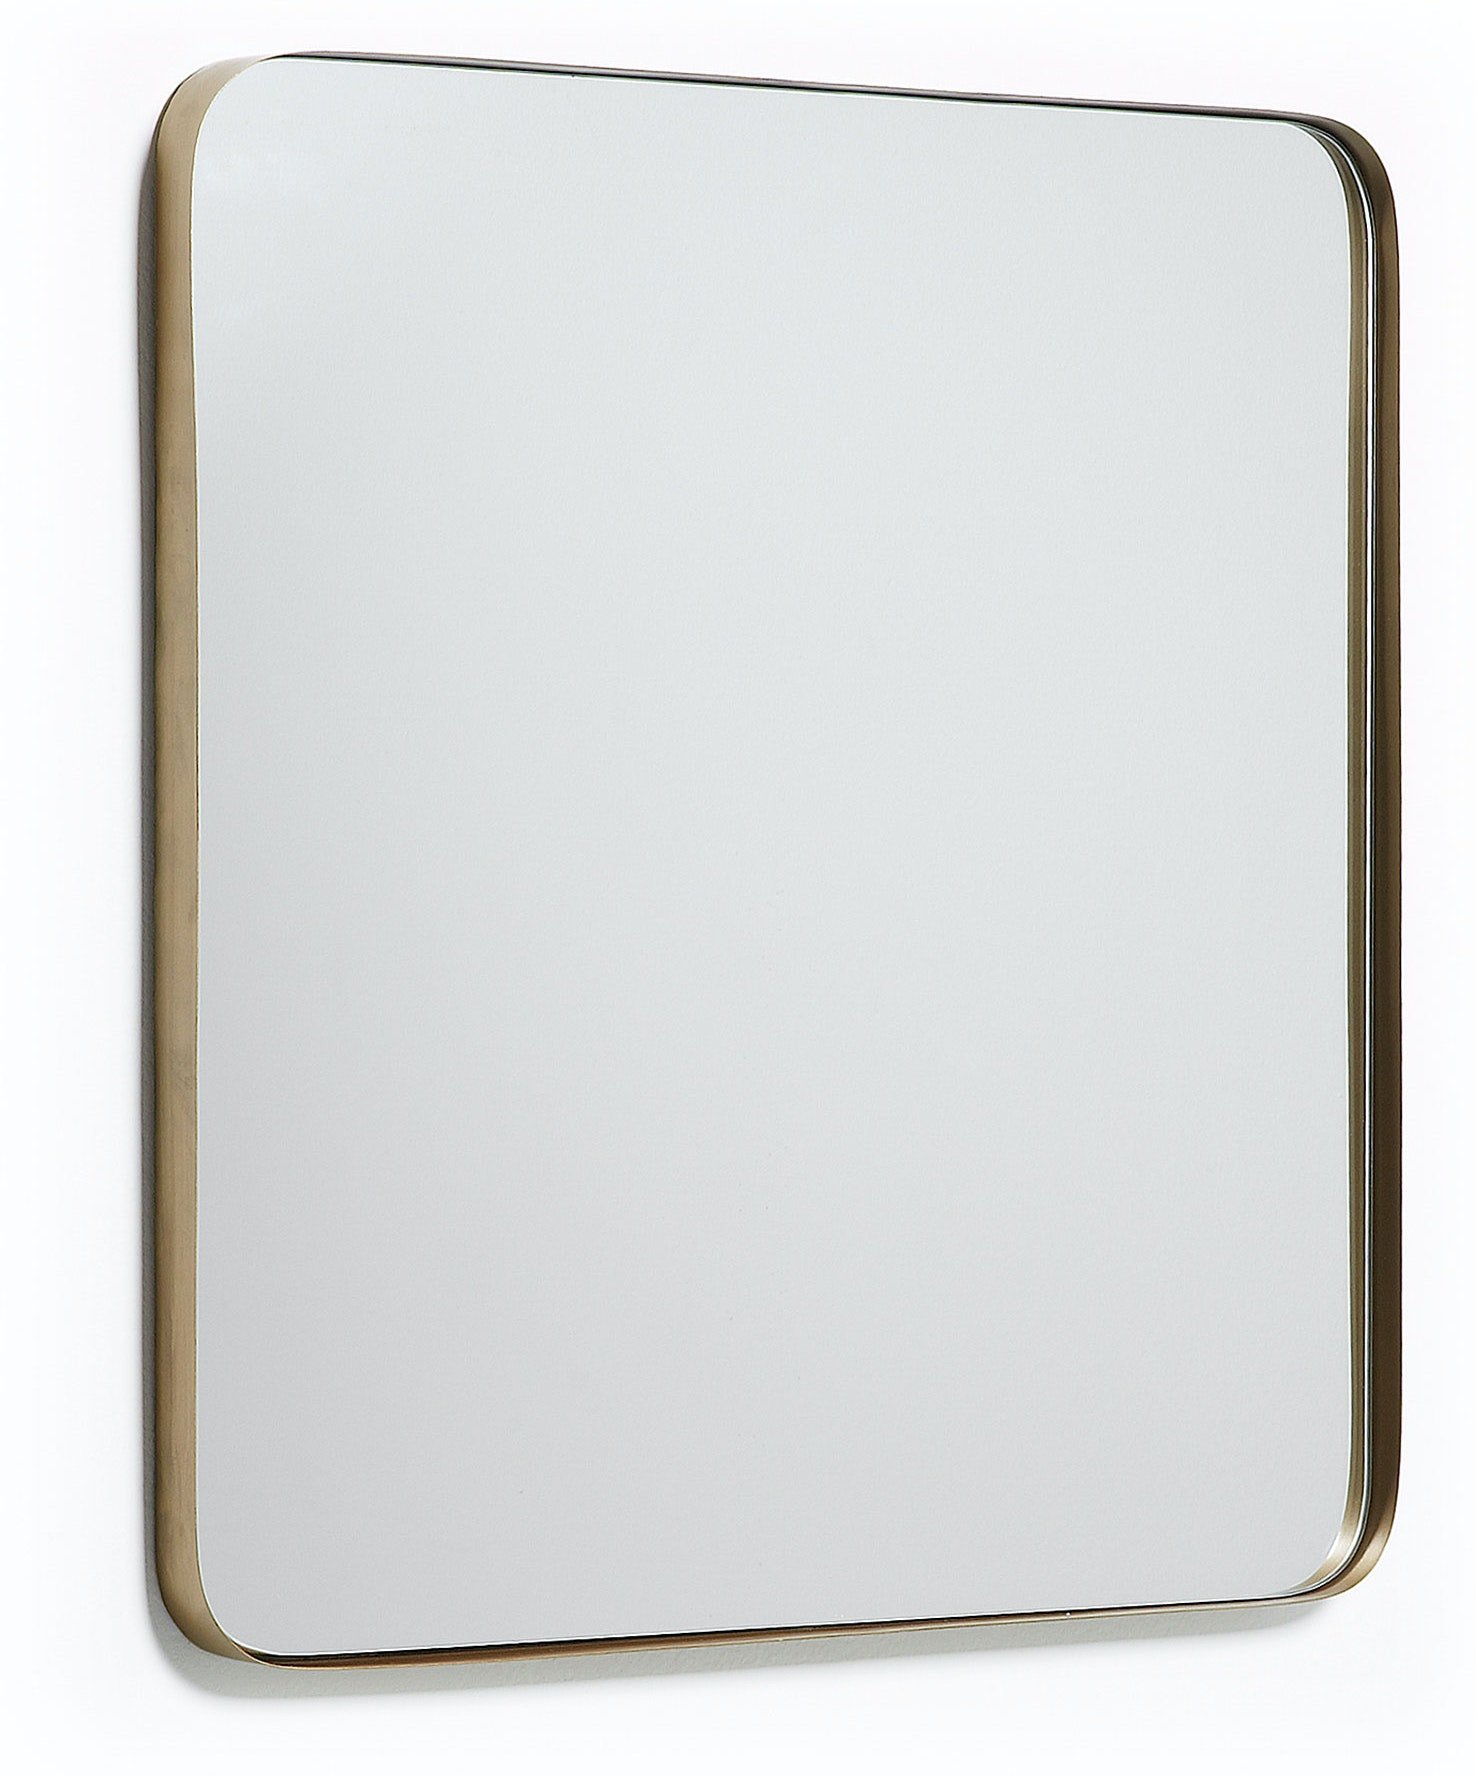 Marco, Vægspejl by LaForma (H: 60 cm. B: 60 cm. L: 3 cm., Guld)